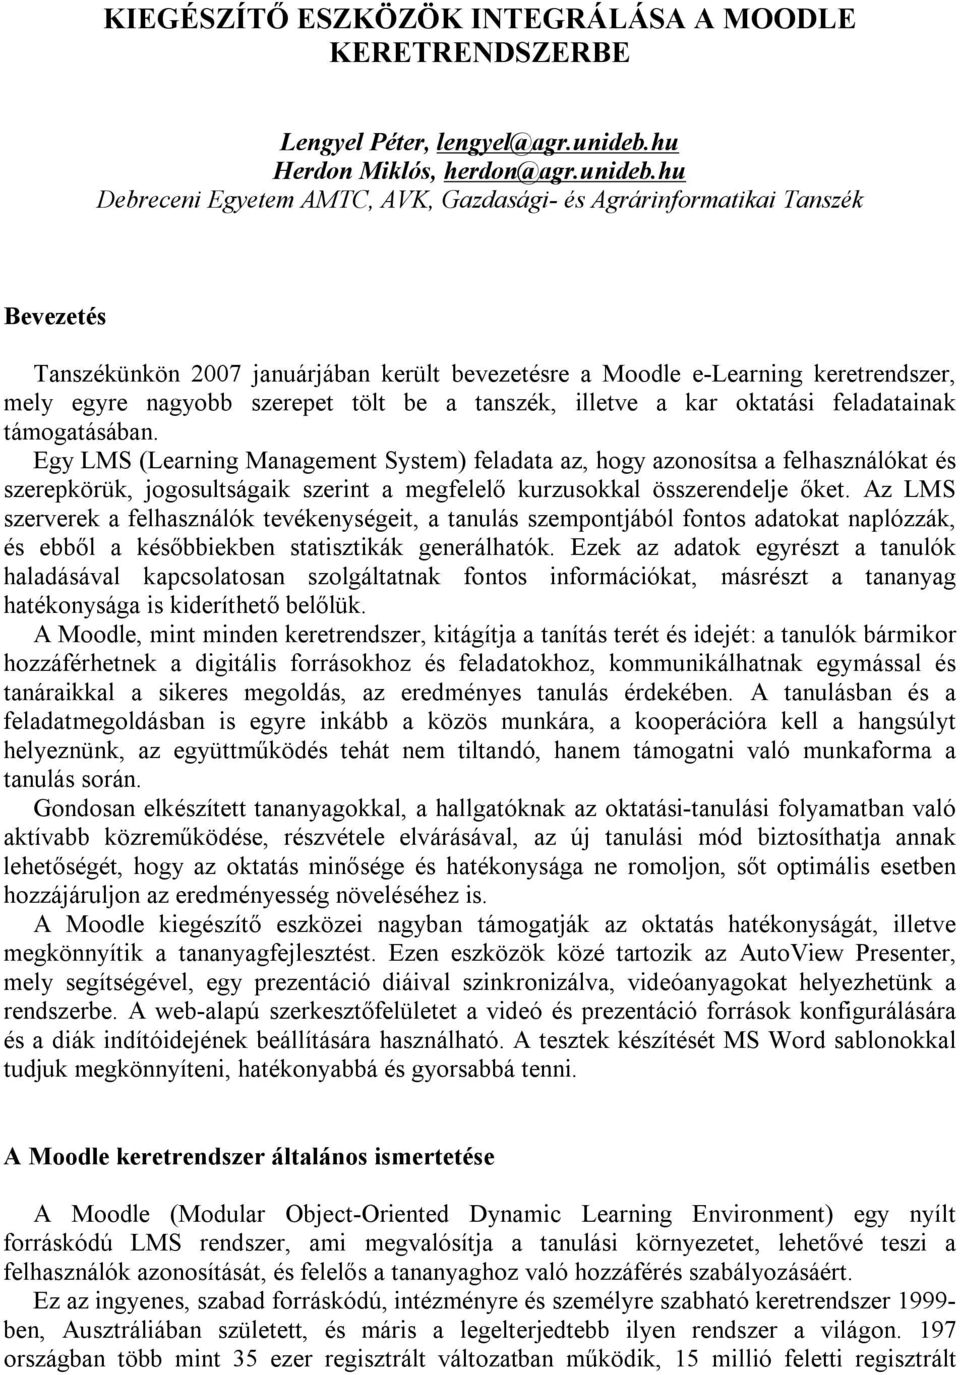 hu Debreceni Egyetem AMTC, AVK, Gazdasági- és Agrárinformatikai Tanszék Bevezetés Tanszékünkön 2007 januárjában került bevezetésre a Moodle e-learning keretrendszer, mely egyre nagyobb szerepet tölt